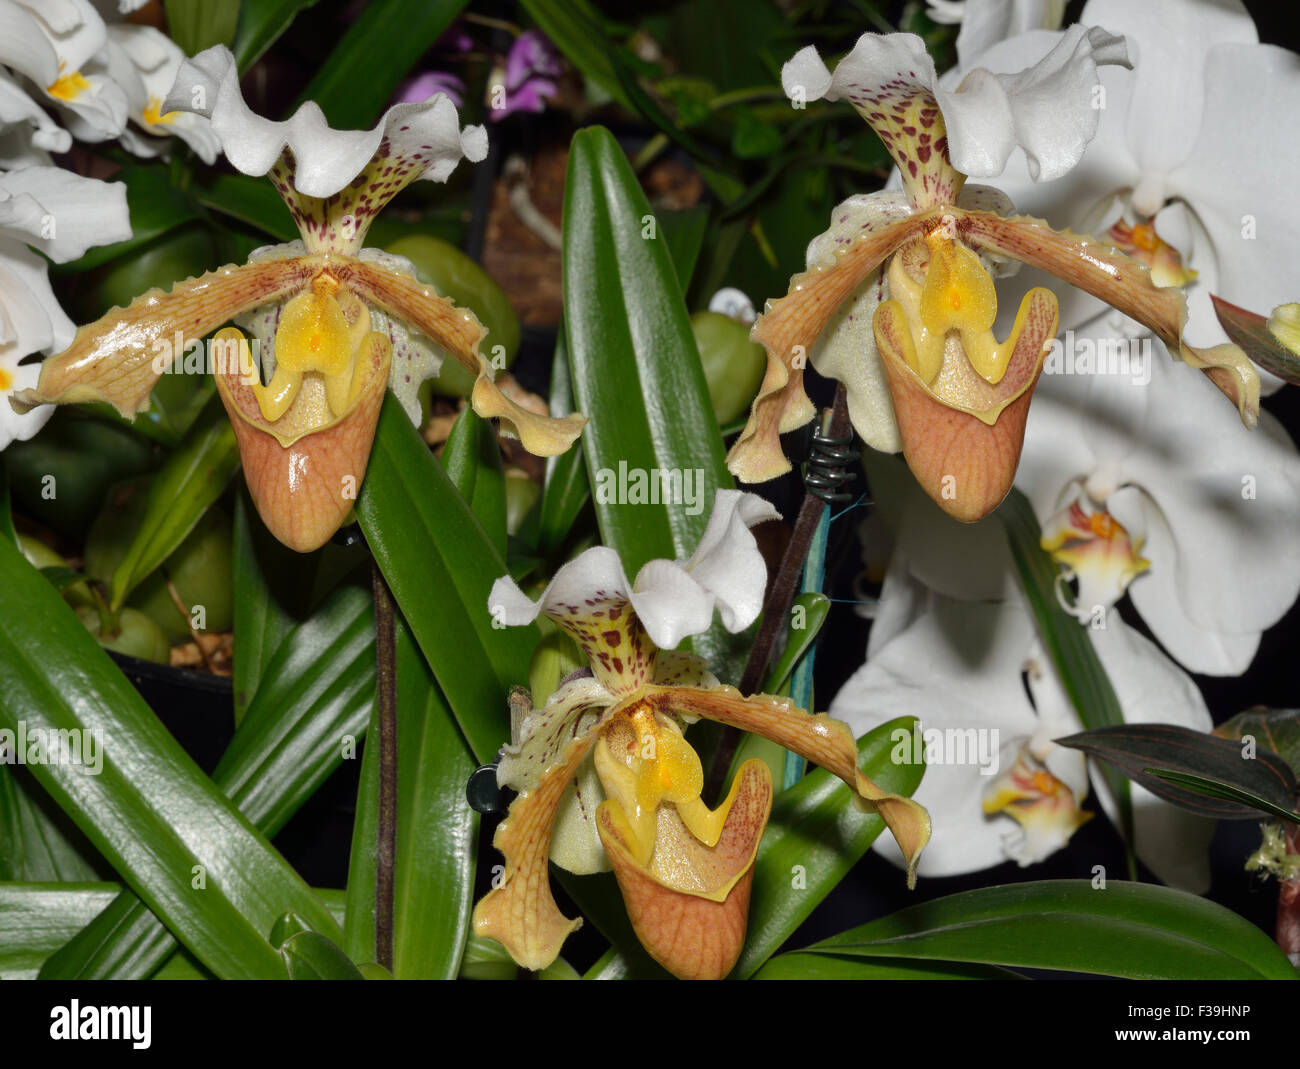 Paphiopedilum Slipper Orchid Hybrid - Paphiopedilum insigne x harefiel Stock Photo